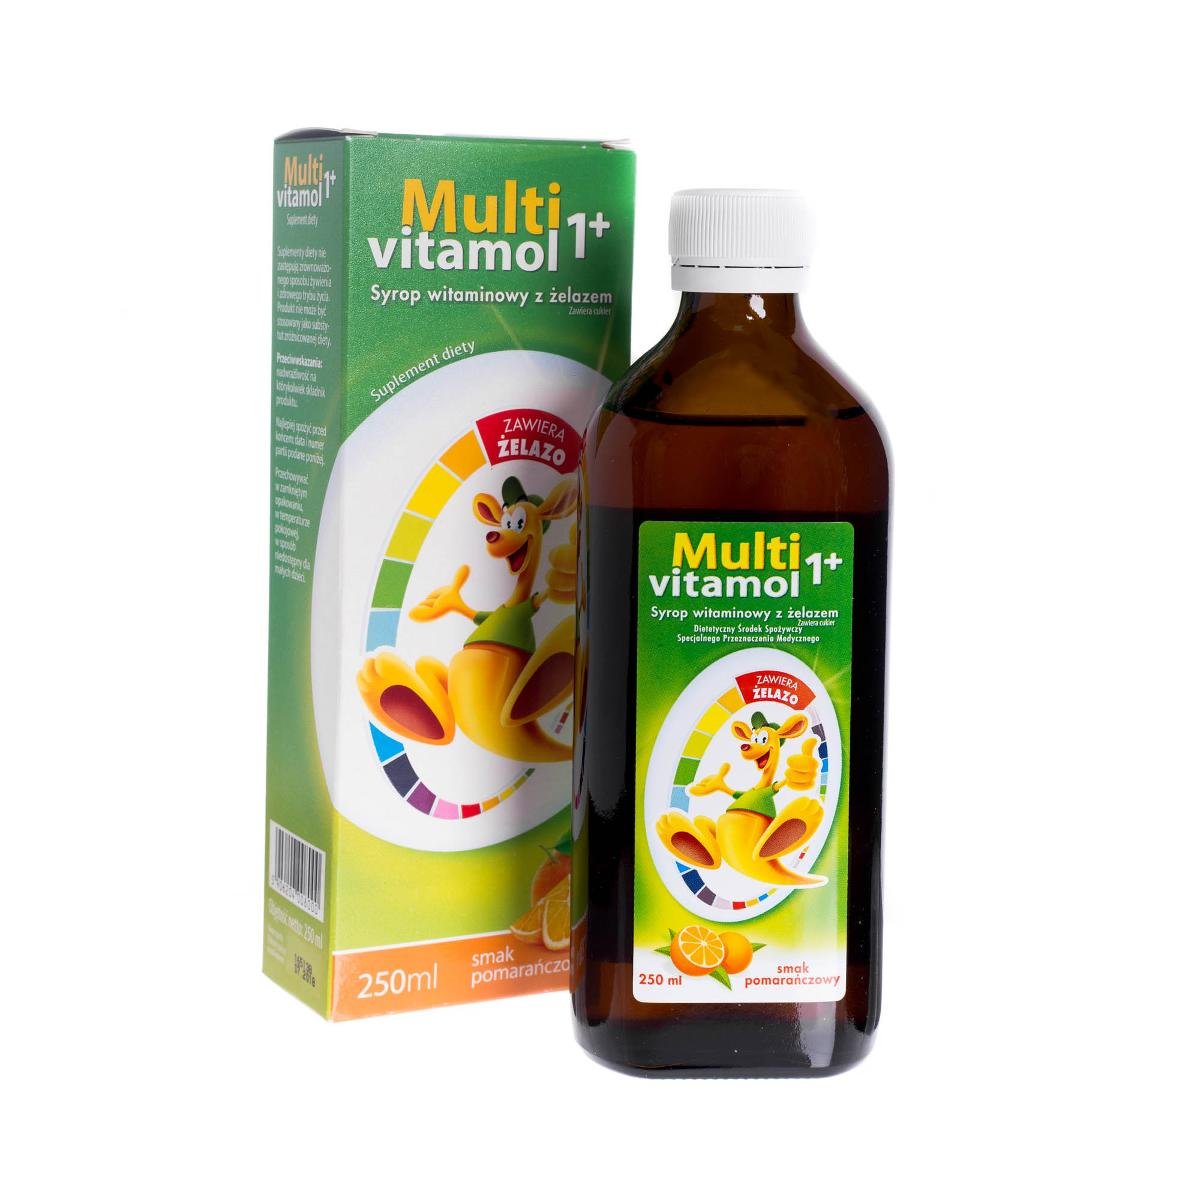 Zdjęcia - Witaminy i składniki mineralne Natur Produkt Multivitamol 1+ Syrop witaminowy z żelazem, suplement diety, smak pomarańc 